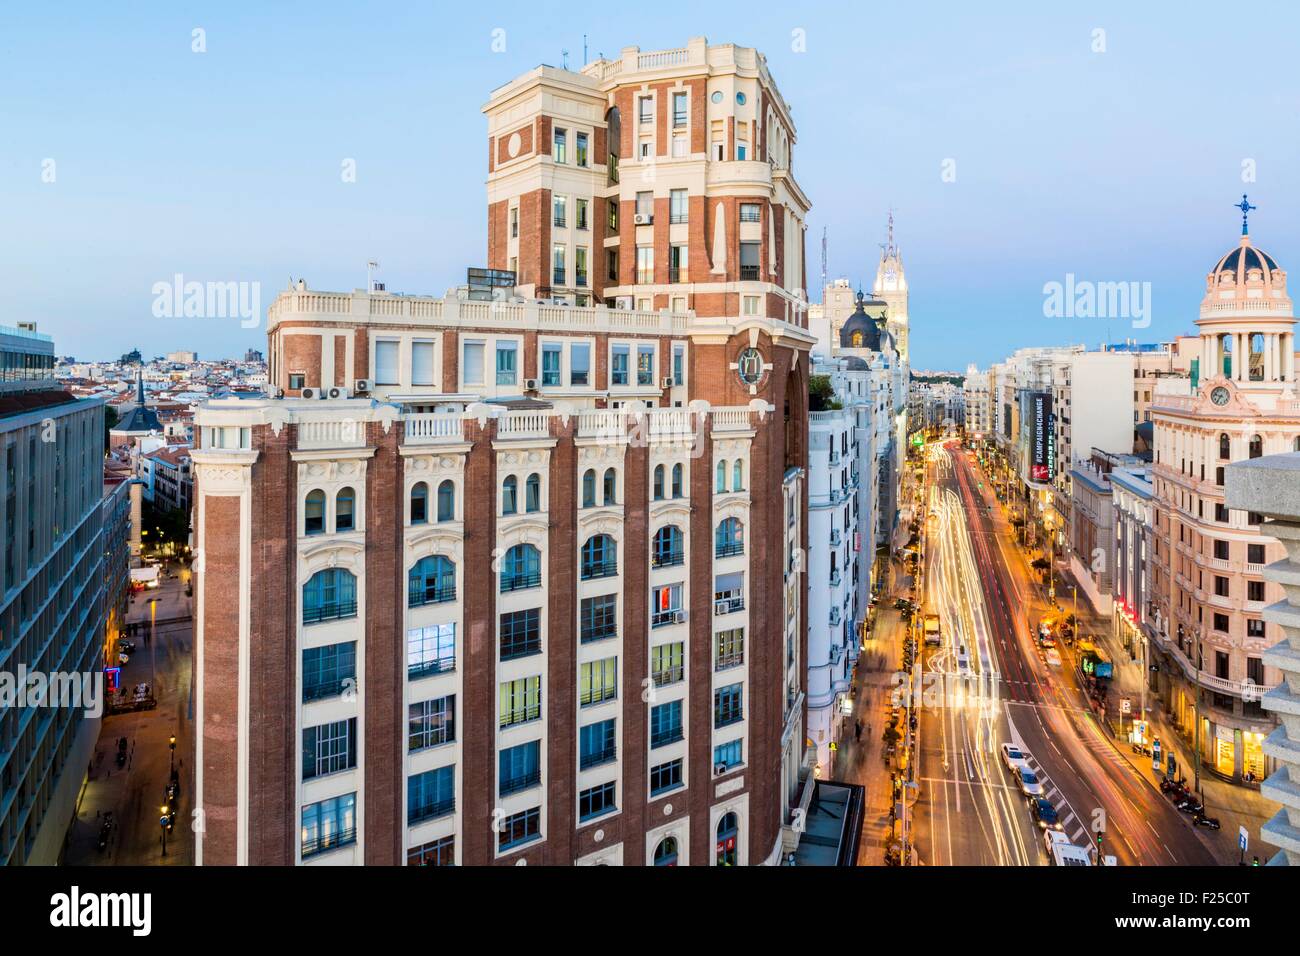 Spanien, Madrid, das Viertel La Latina mit Blick auf die Gran Via mit in der linken den Palast der Presse im Jahr 1920 gebaut Stockfoto